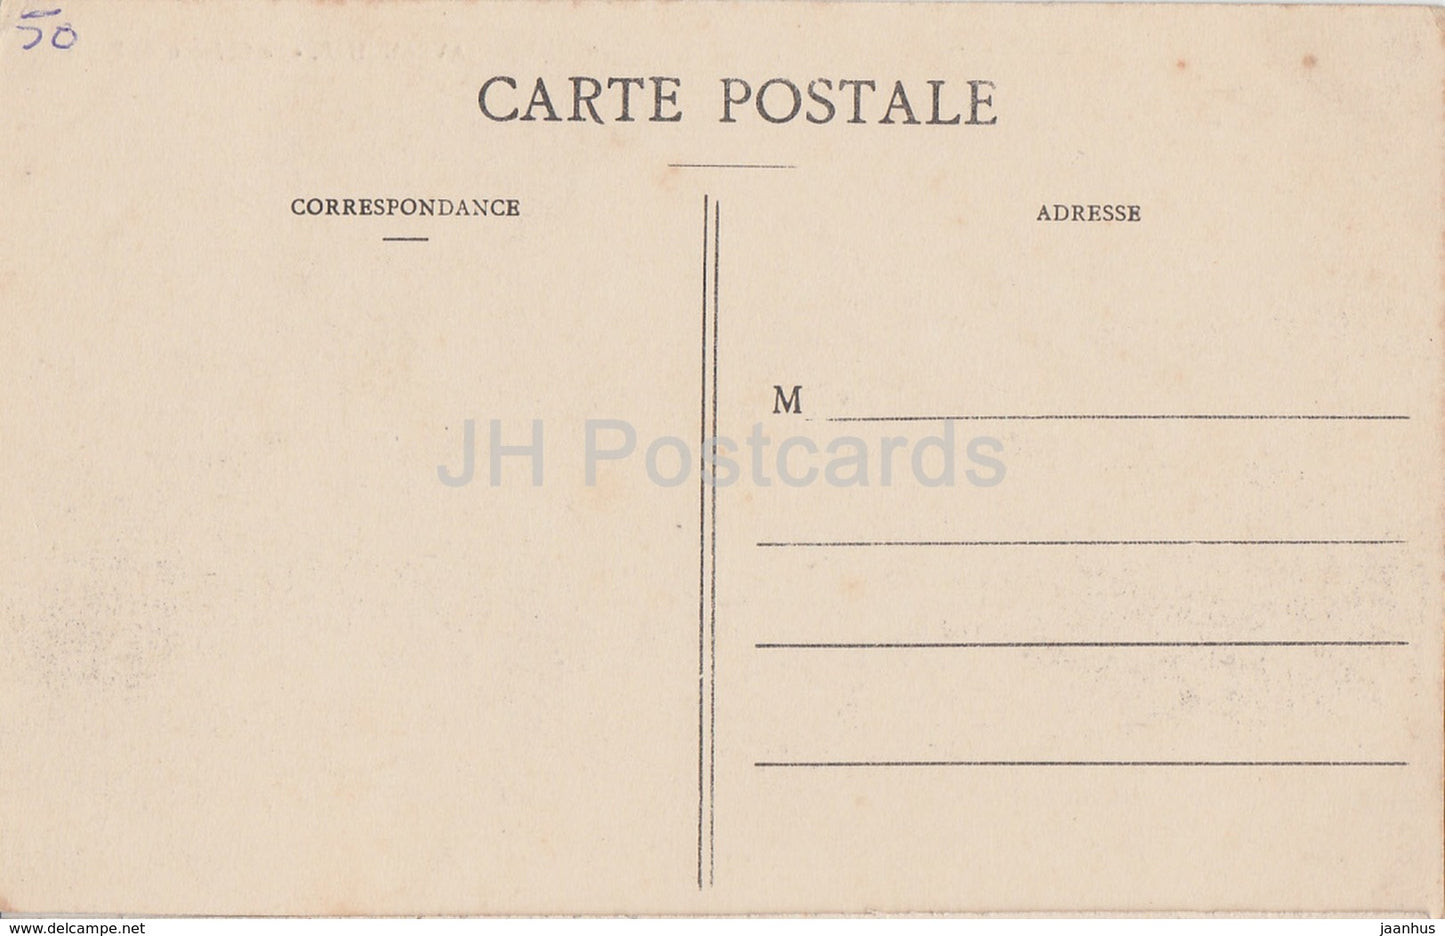 Avranches - Le Chateau de Paille - castle - old postcard - France - unused